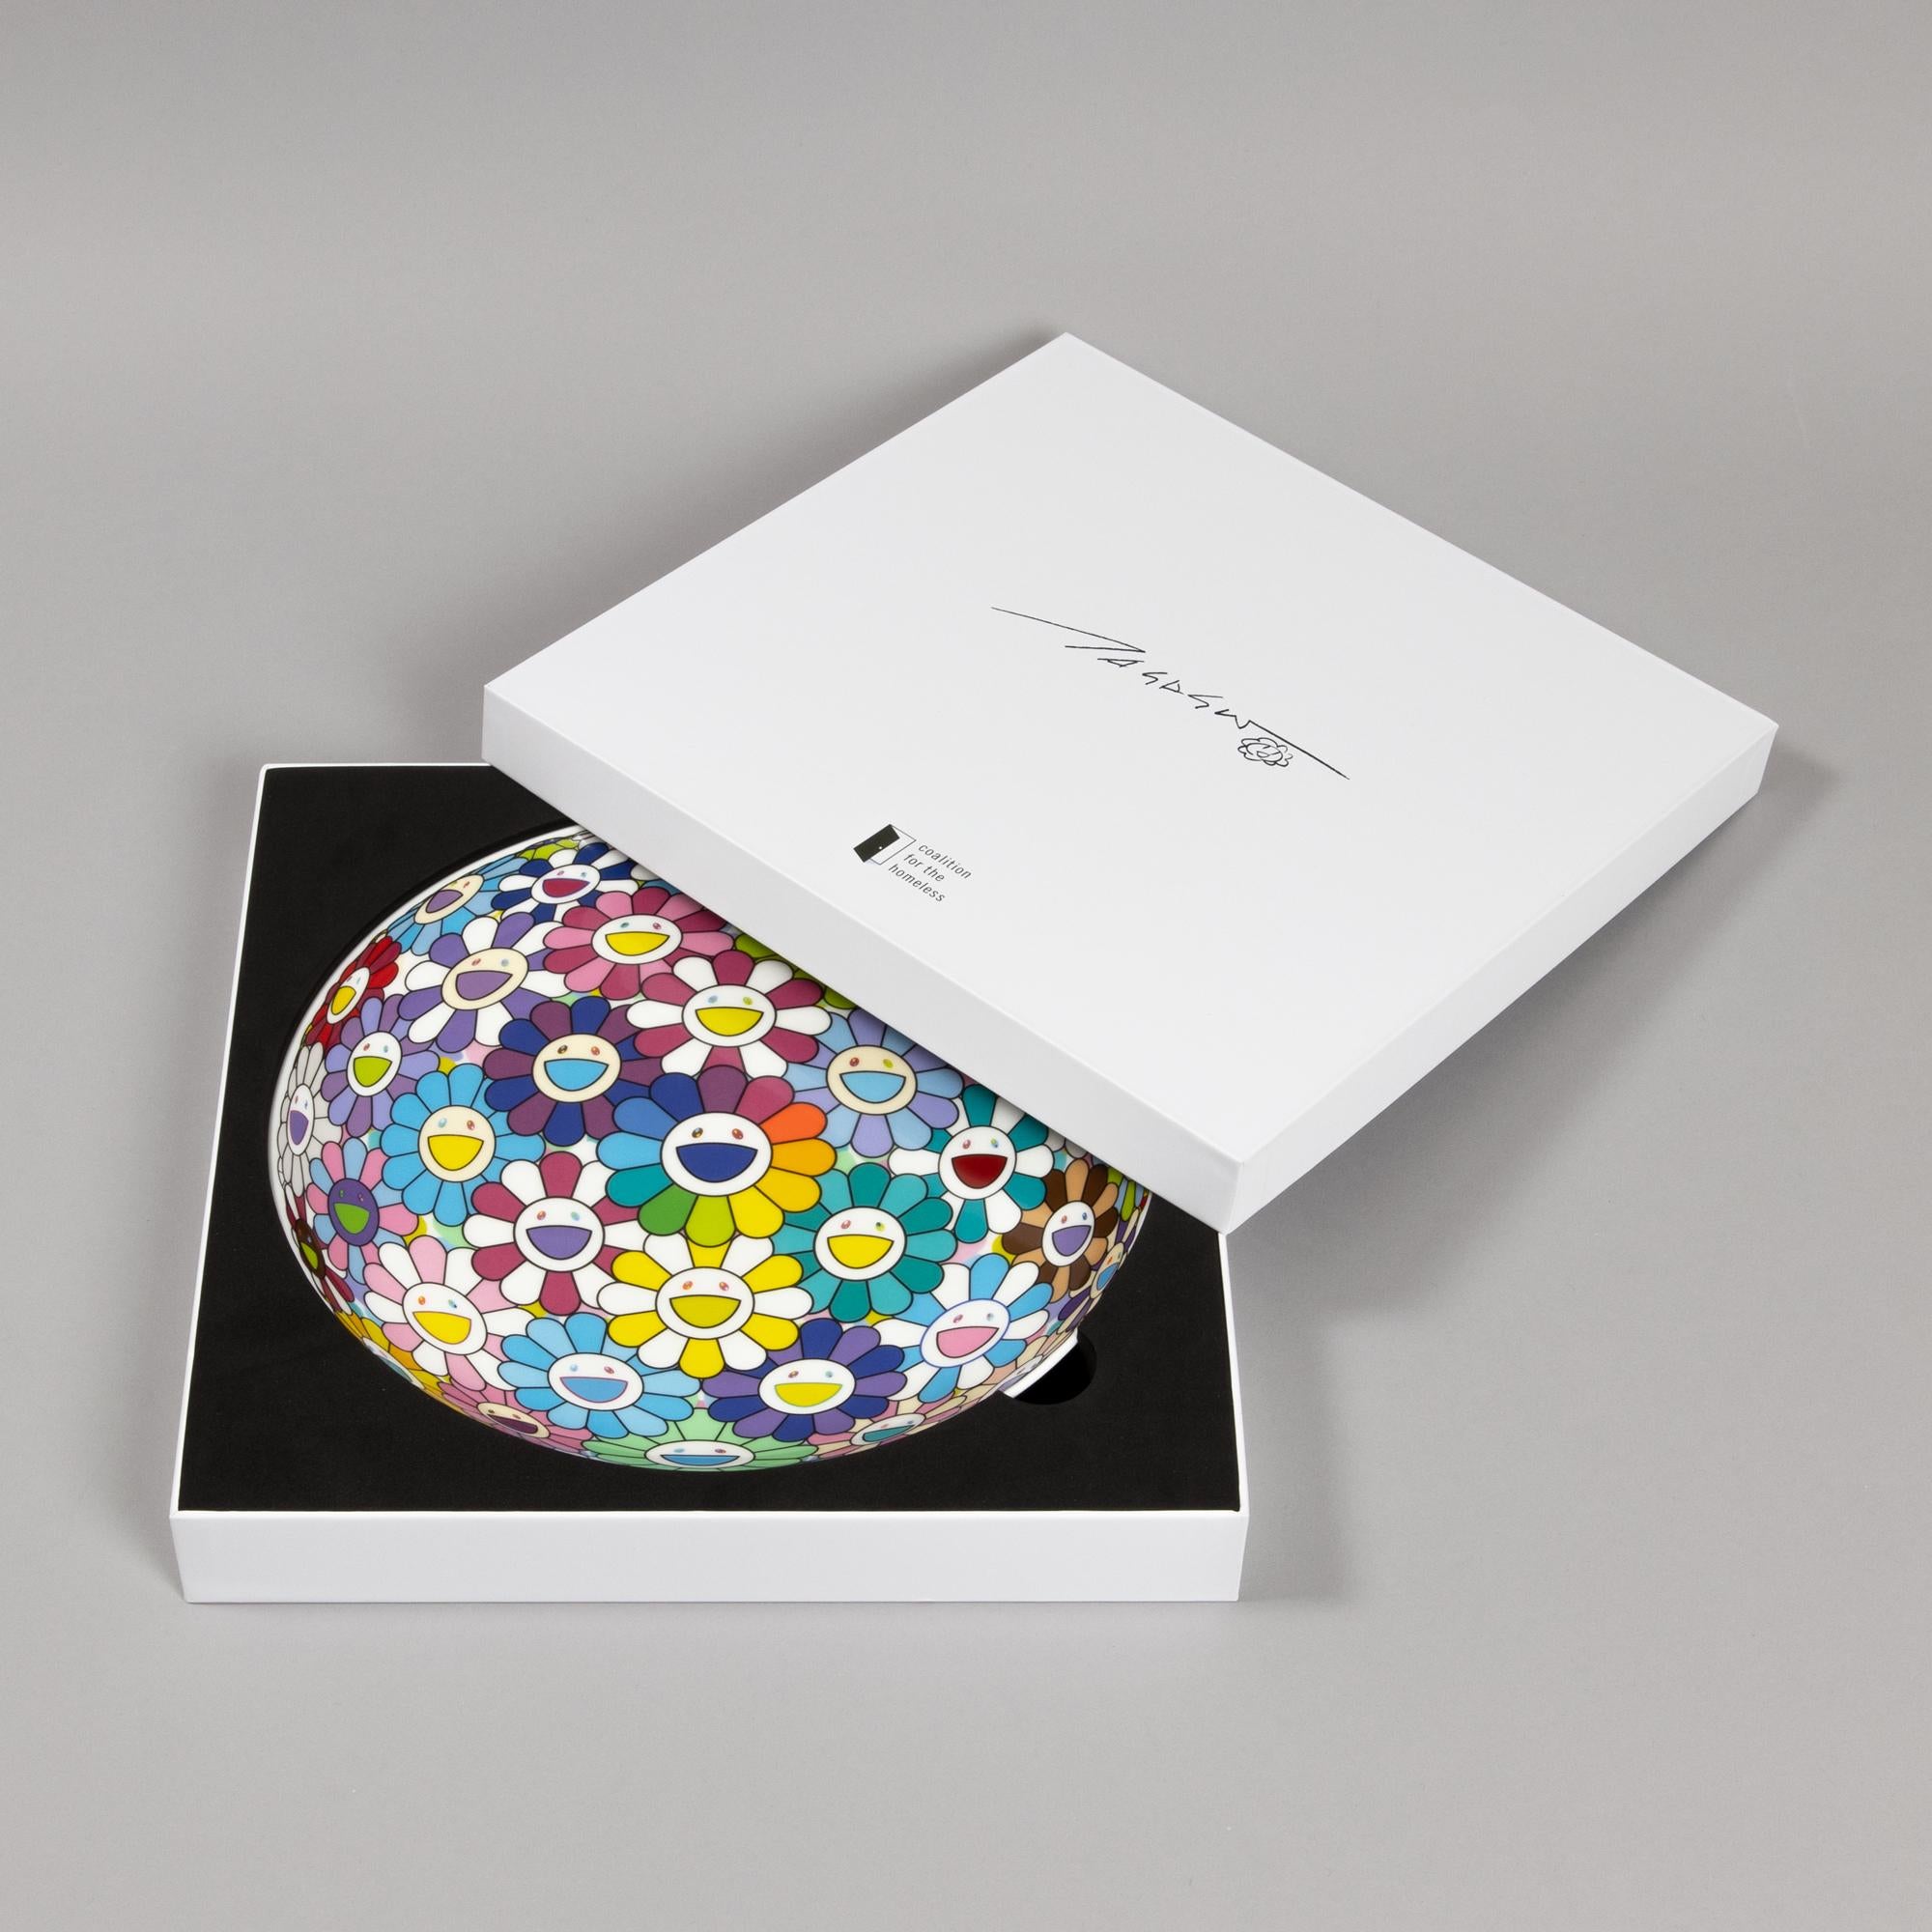 Takashi Murakami, Gargantua on Your Palm - Limited Edition Plate, Pop Art For Sale 1